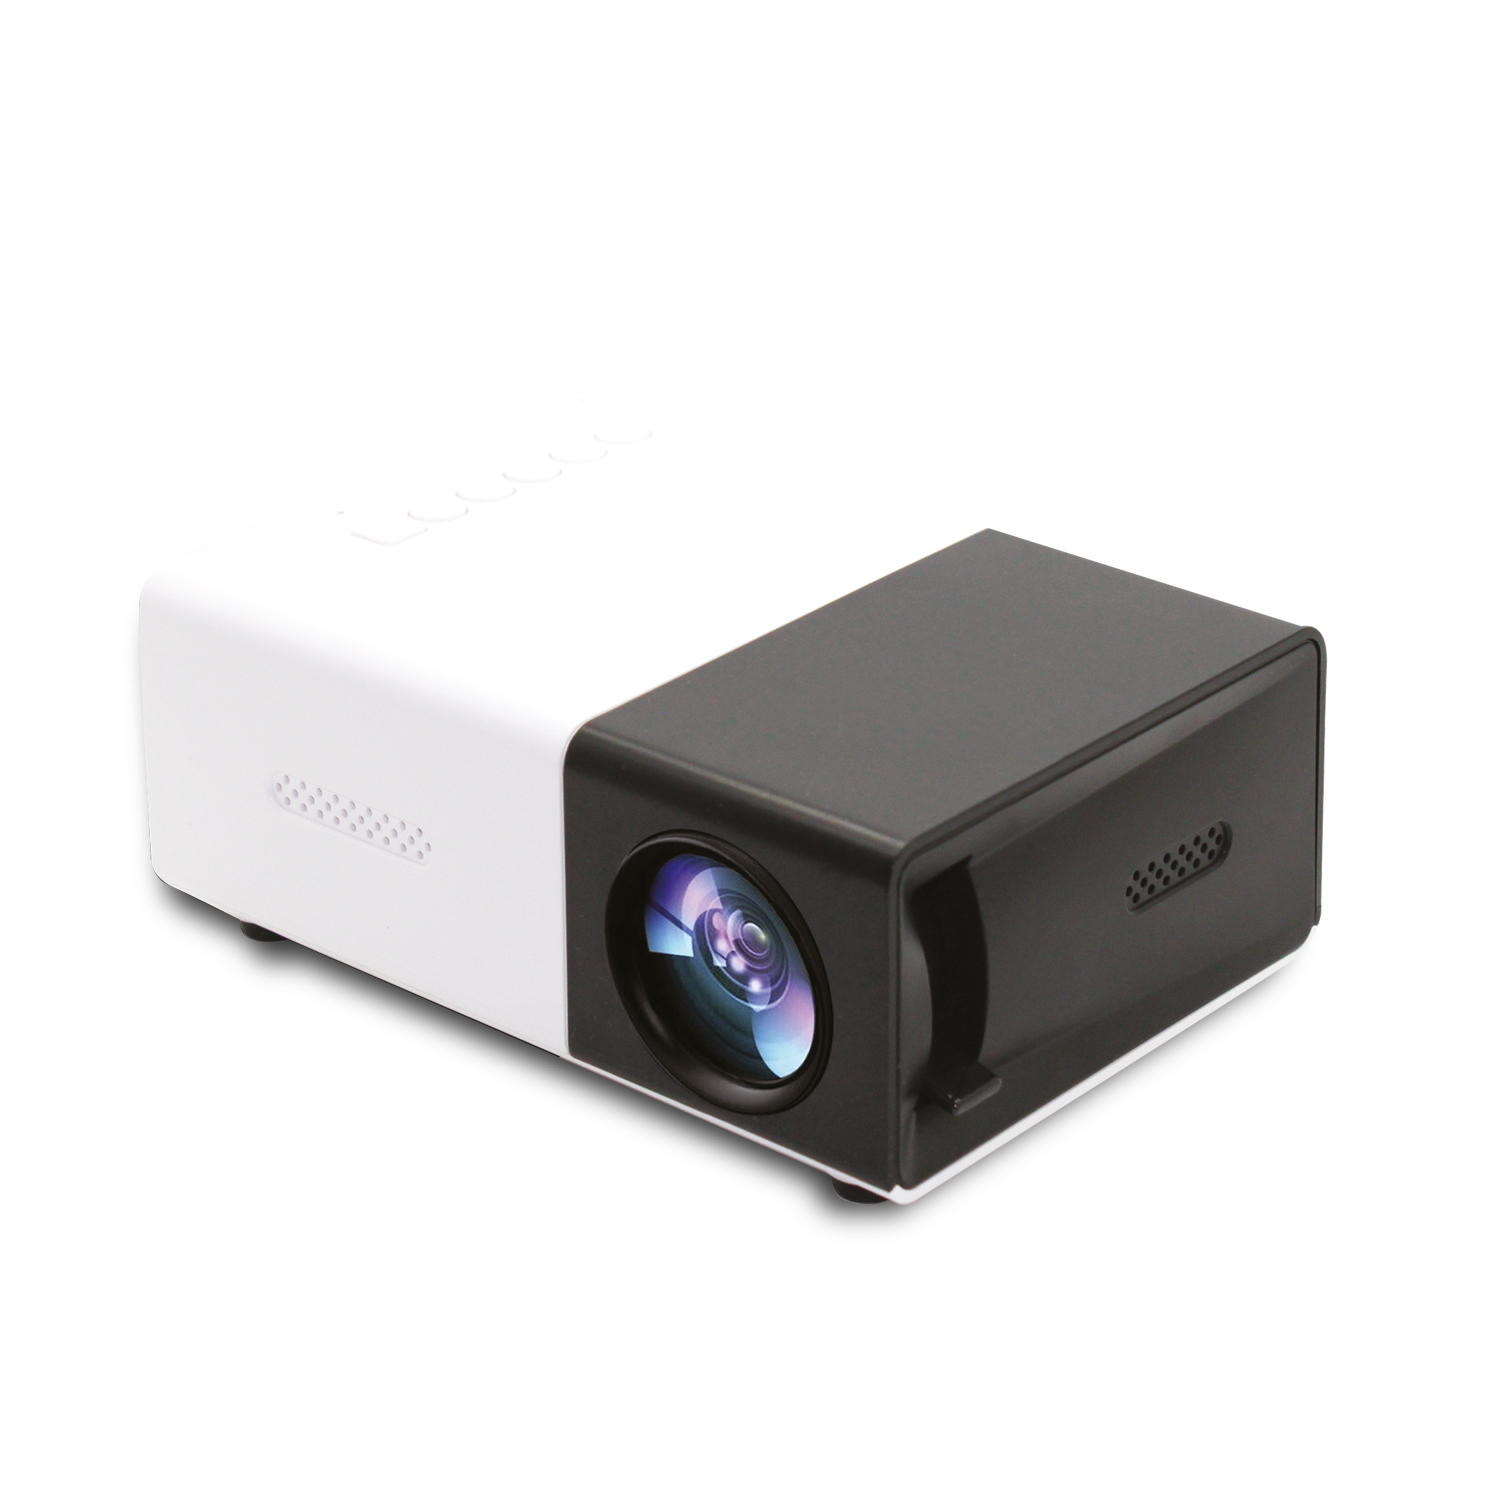 IMC300 LCD Mini Portable Projector home theater